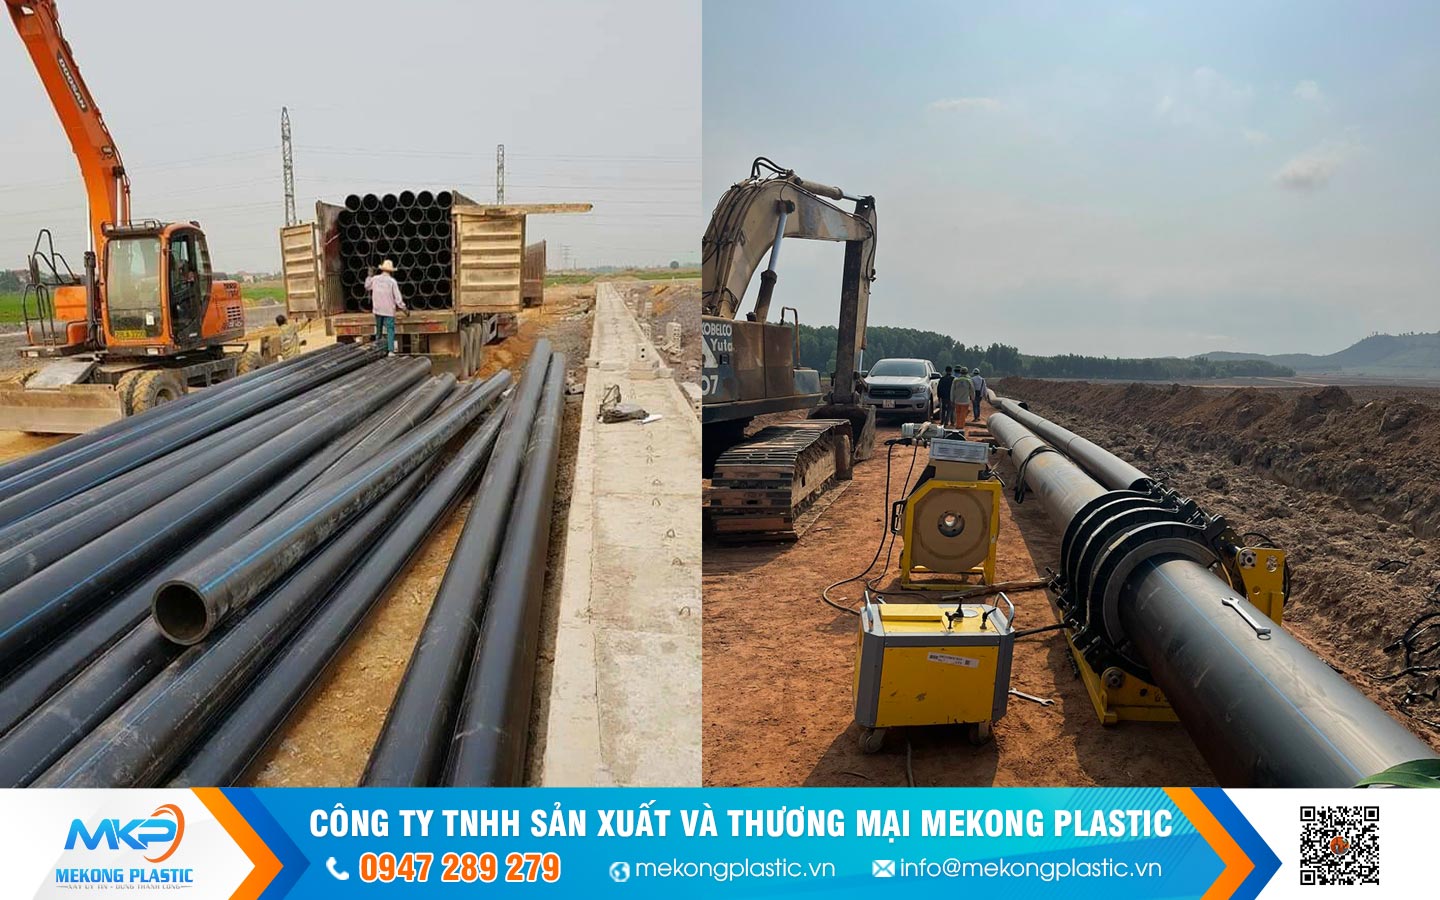 Chọn ống nhựa HDPE là chọn giải pháp nước sạch bền vững